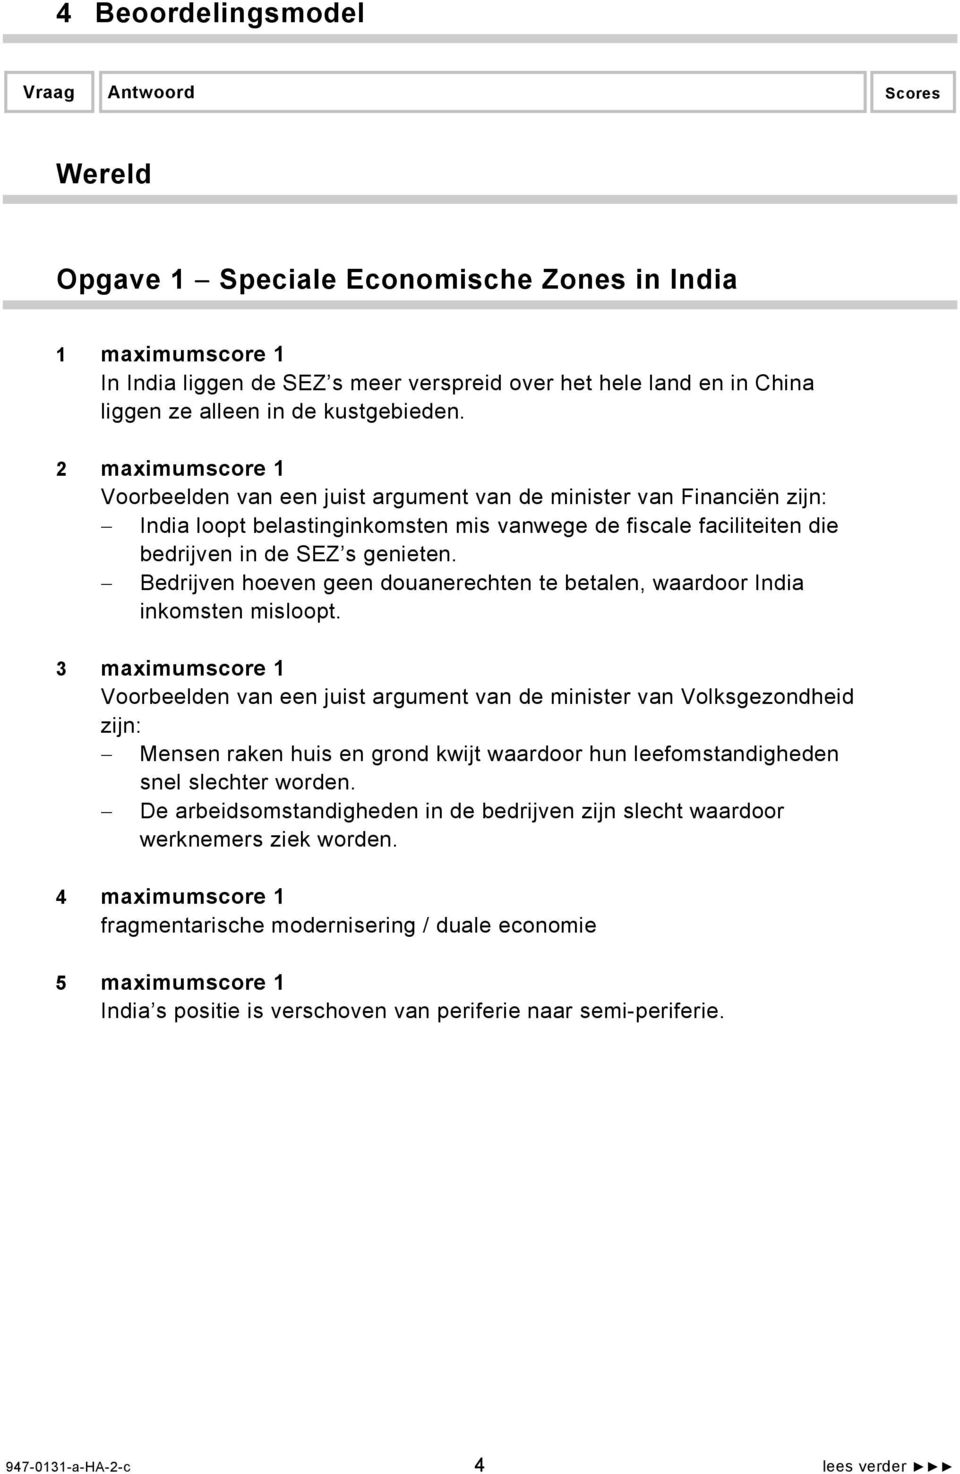 2 maximumscore 1 Voorbeelden van een juist argument van de minister van Financiën zijn: India loopt belastinginkomsten mis vanwege de fiscale faciliteiten die bedrijven in de SEZ s genieten.